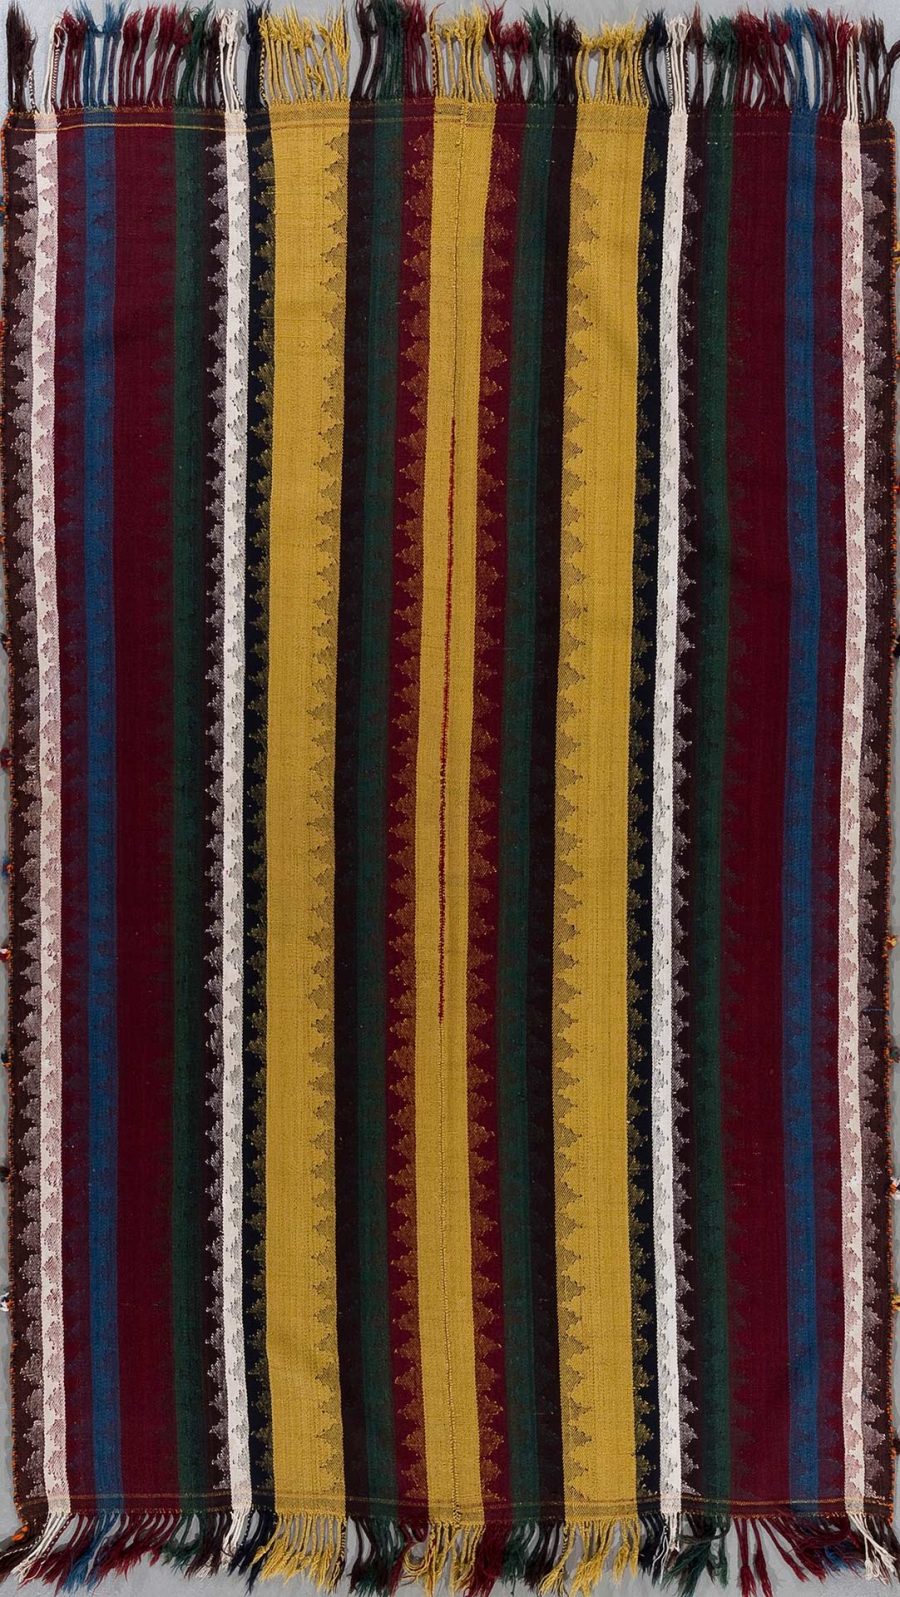 Vertikal gestreifter handgewebter Teppich in den Farben Rot, Blau, Gelb und Grün mit Fransen an den kurzen Enden und traditionellen Mustern.